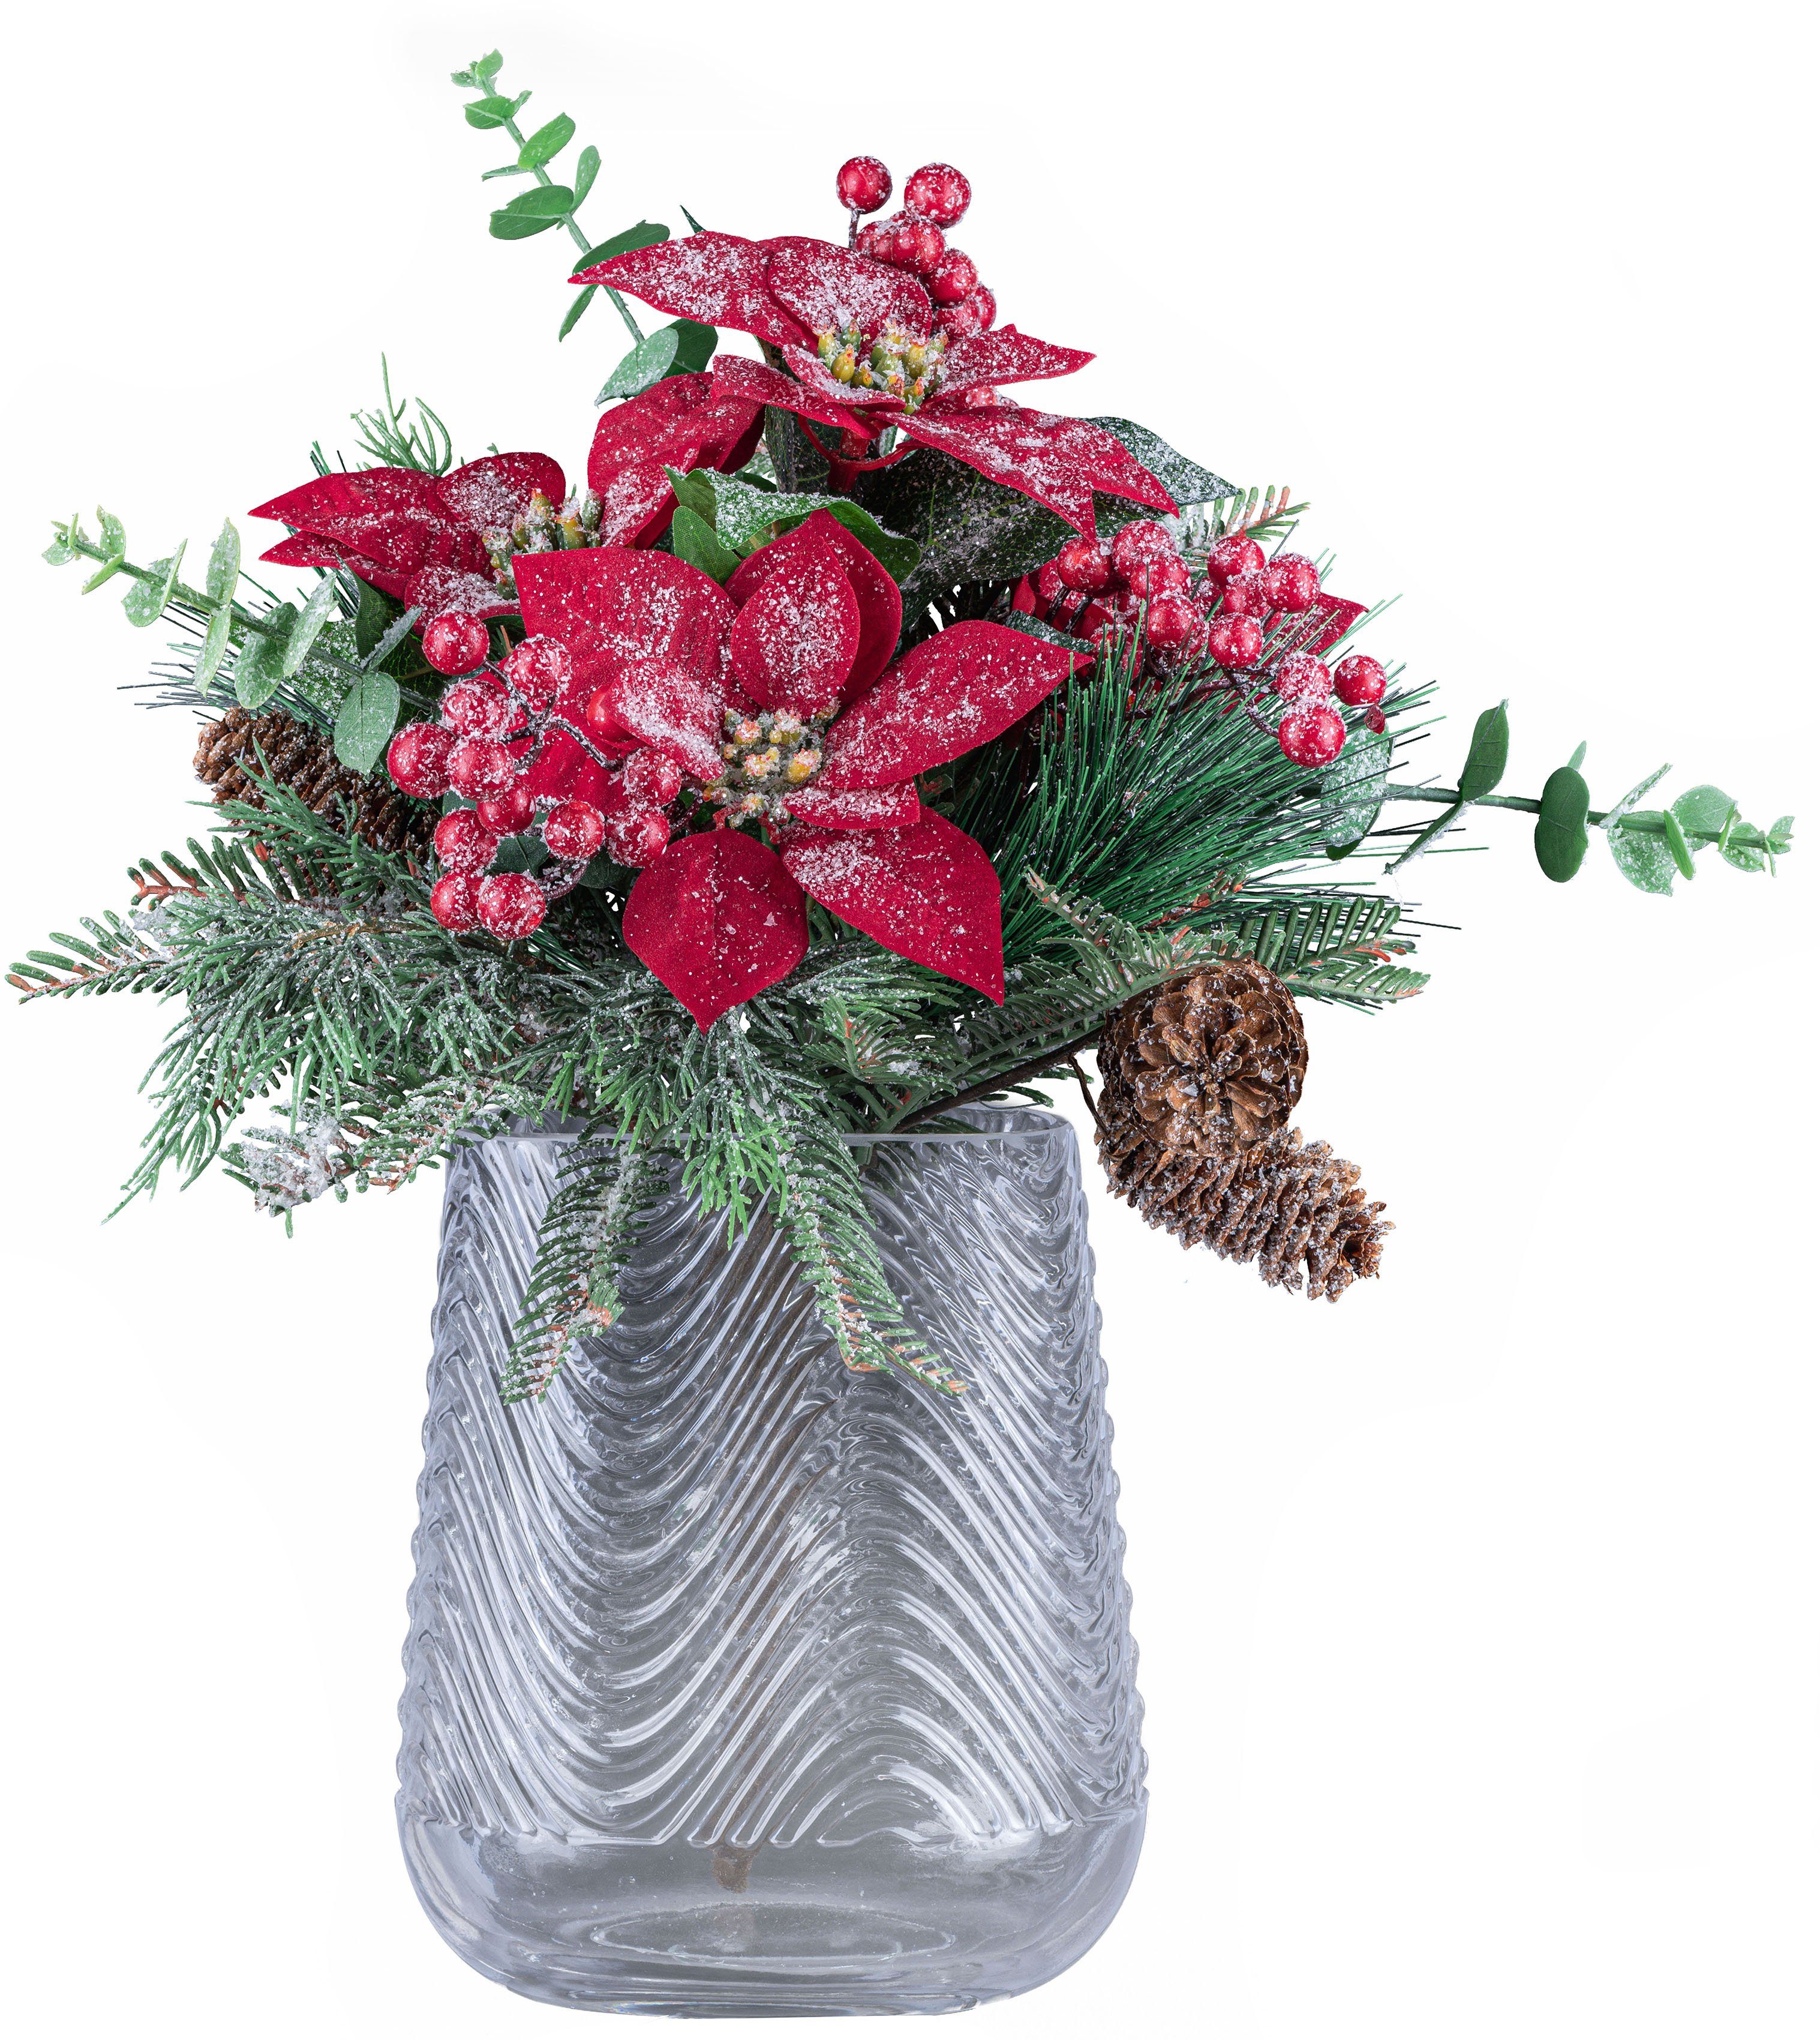 1 in Bouquet), 1 Dekorative traumhaftem mit Vase, Creativ geeister Weihnachtsdeko Optik, deco mit 2 Glasvase Poinsettien-Mixbund Weihnachtsstern-Mix-Bouquet Dekovase St., (Set,